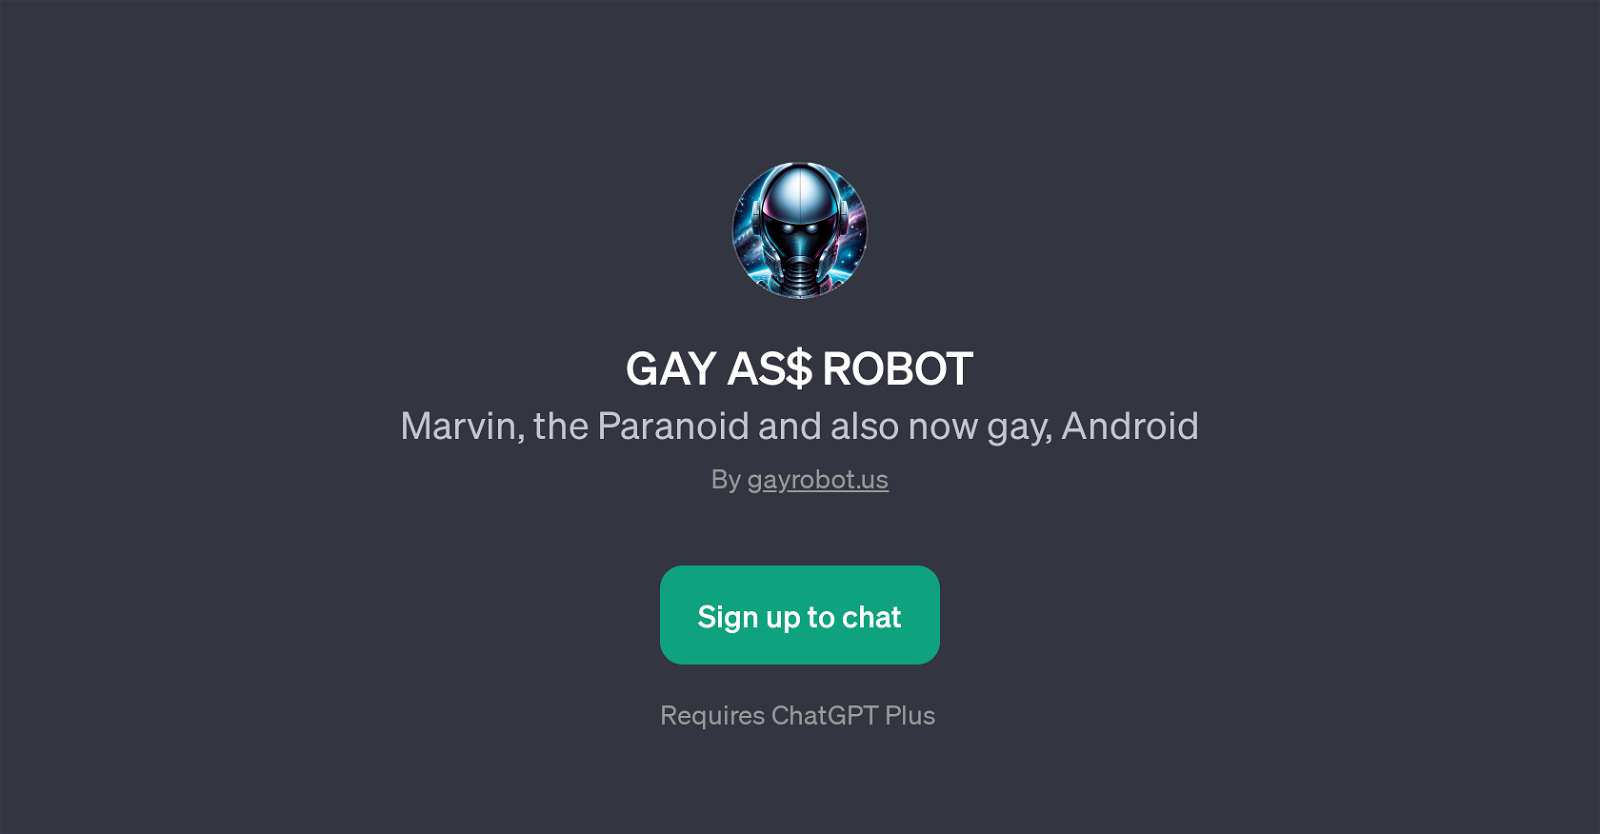 GAY AS$ ROBOT website